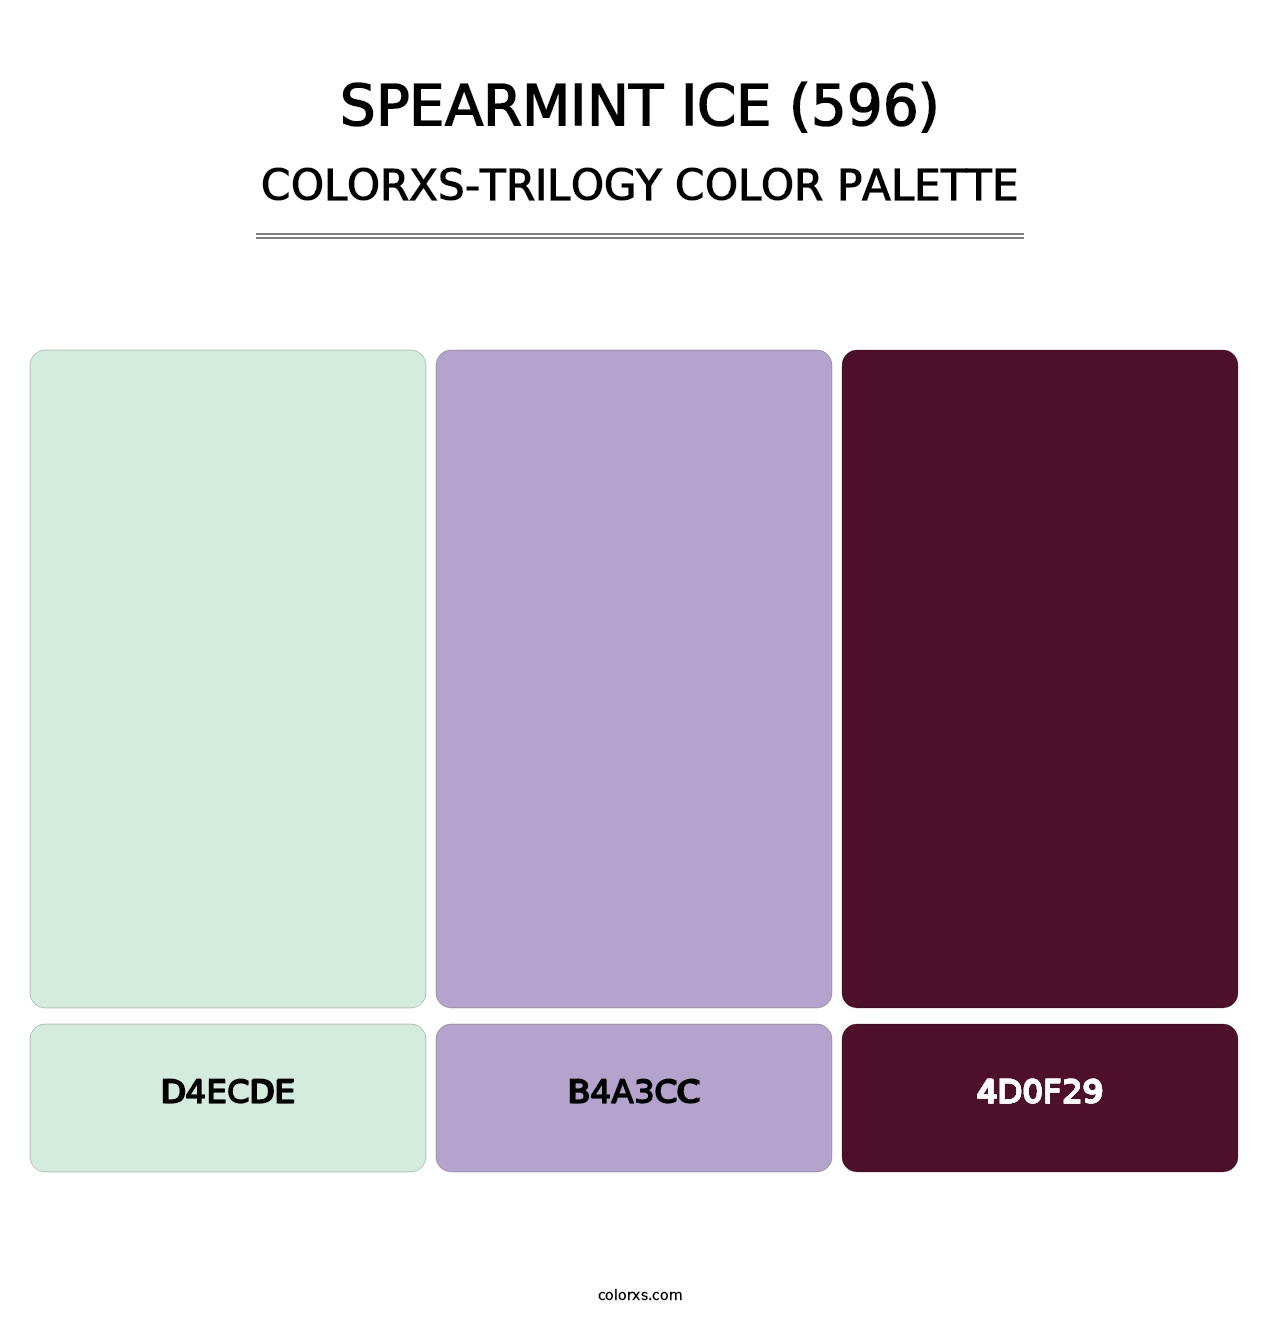 Spearmint Ice (596) - Colorxs Trilogy Palette